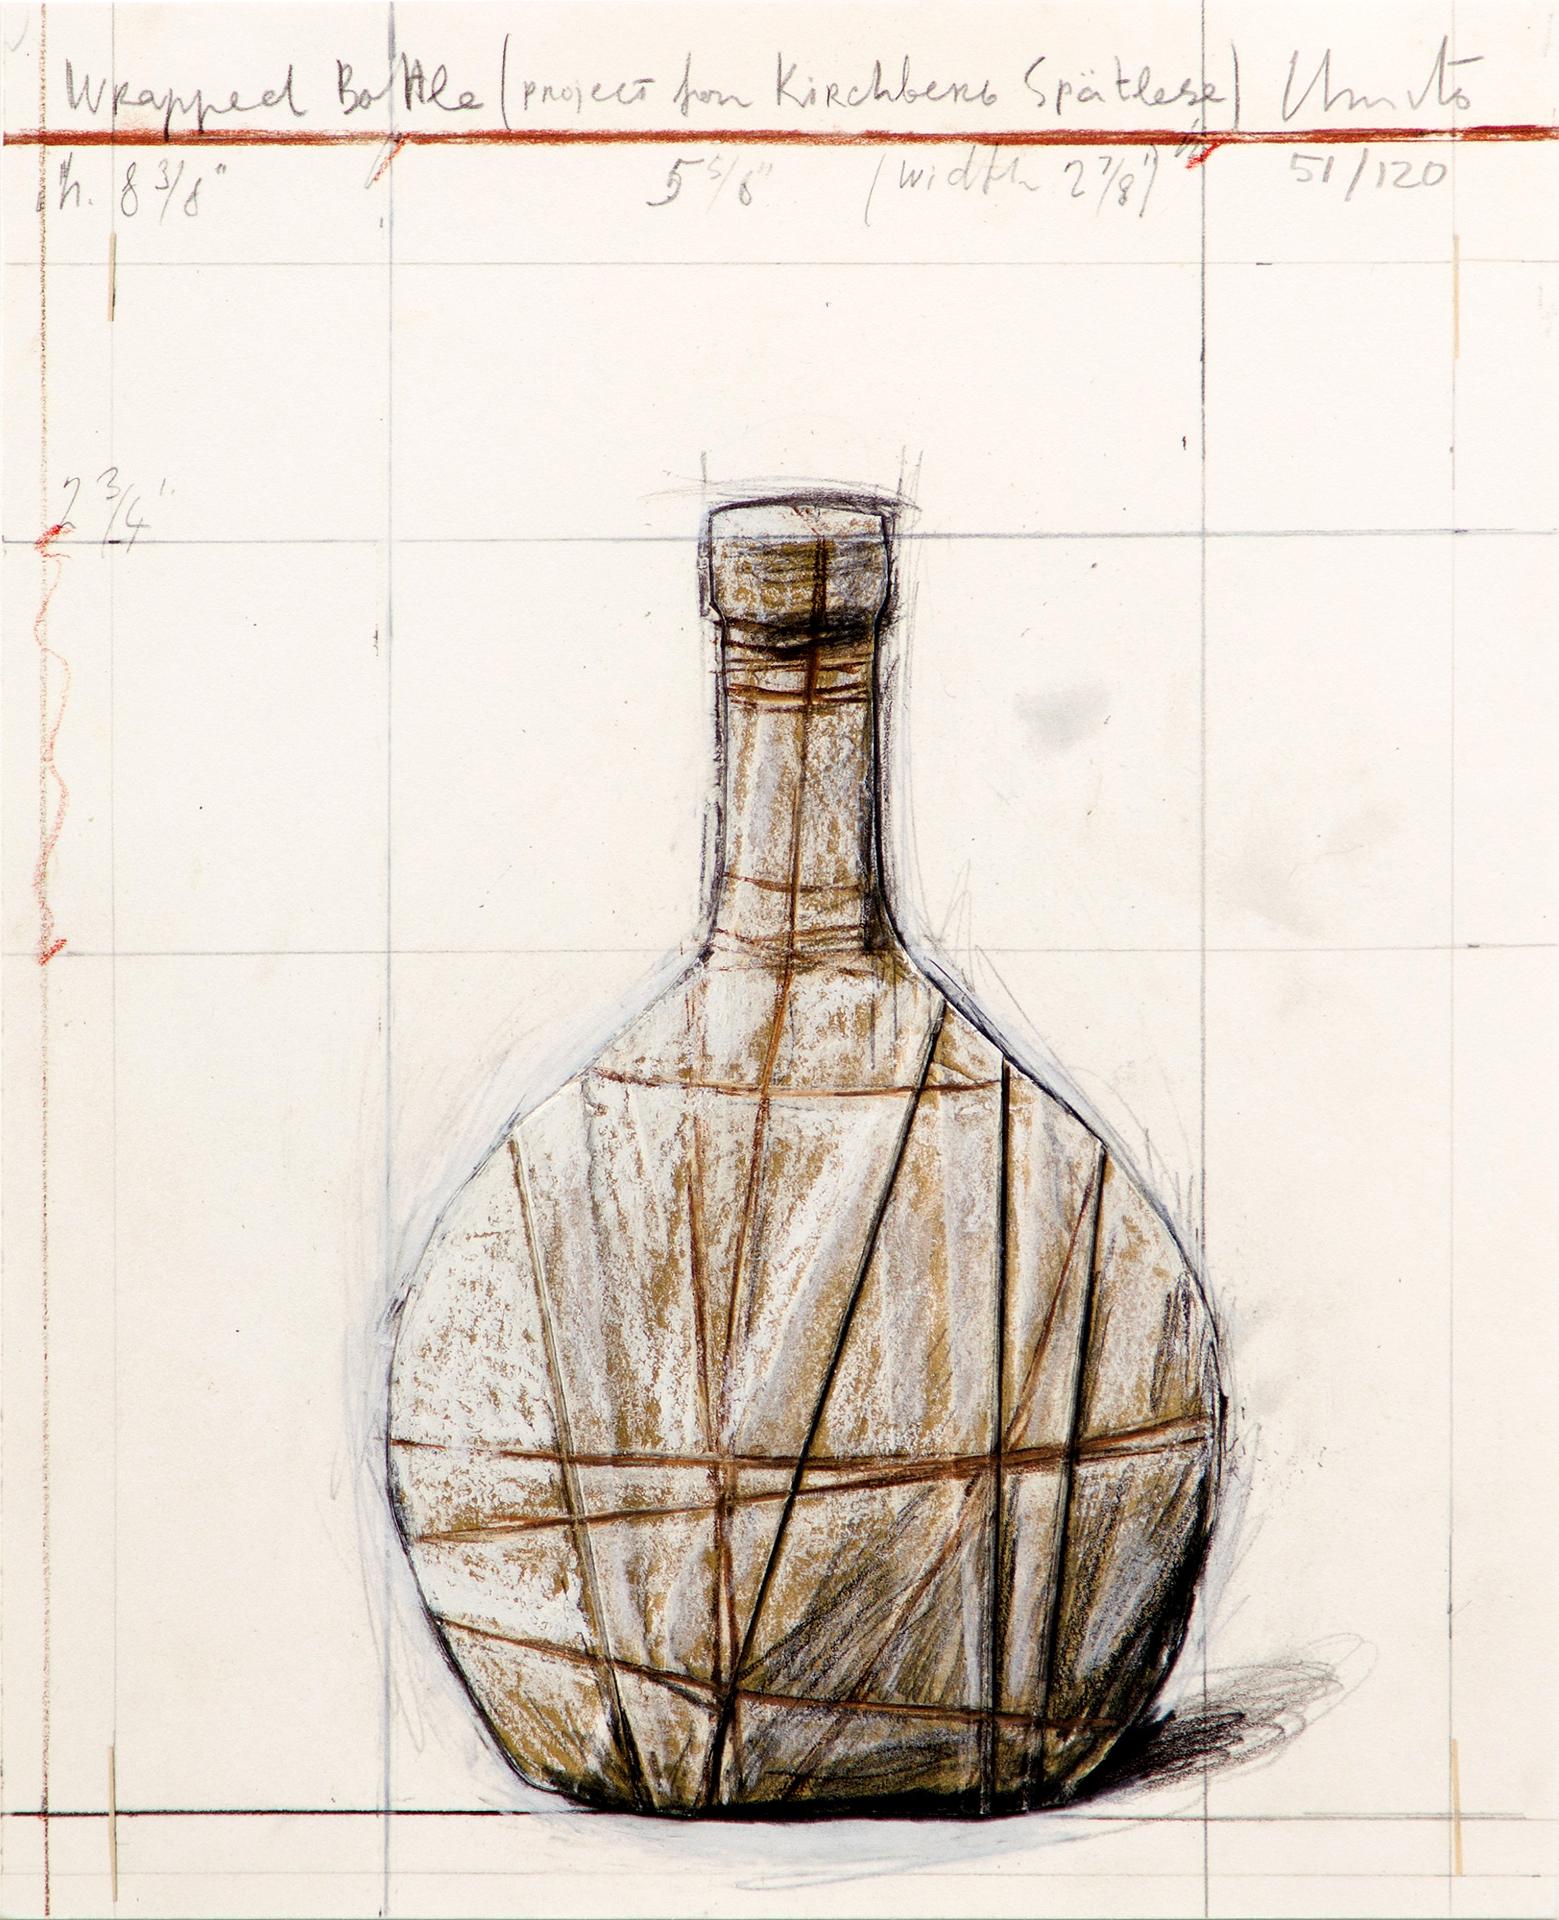 Christo (1935-2020) - Christo, Wrapped Bottle (Projet / Project for Kirchberg Spätlese), 2001 - 2007